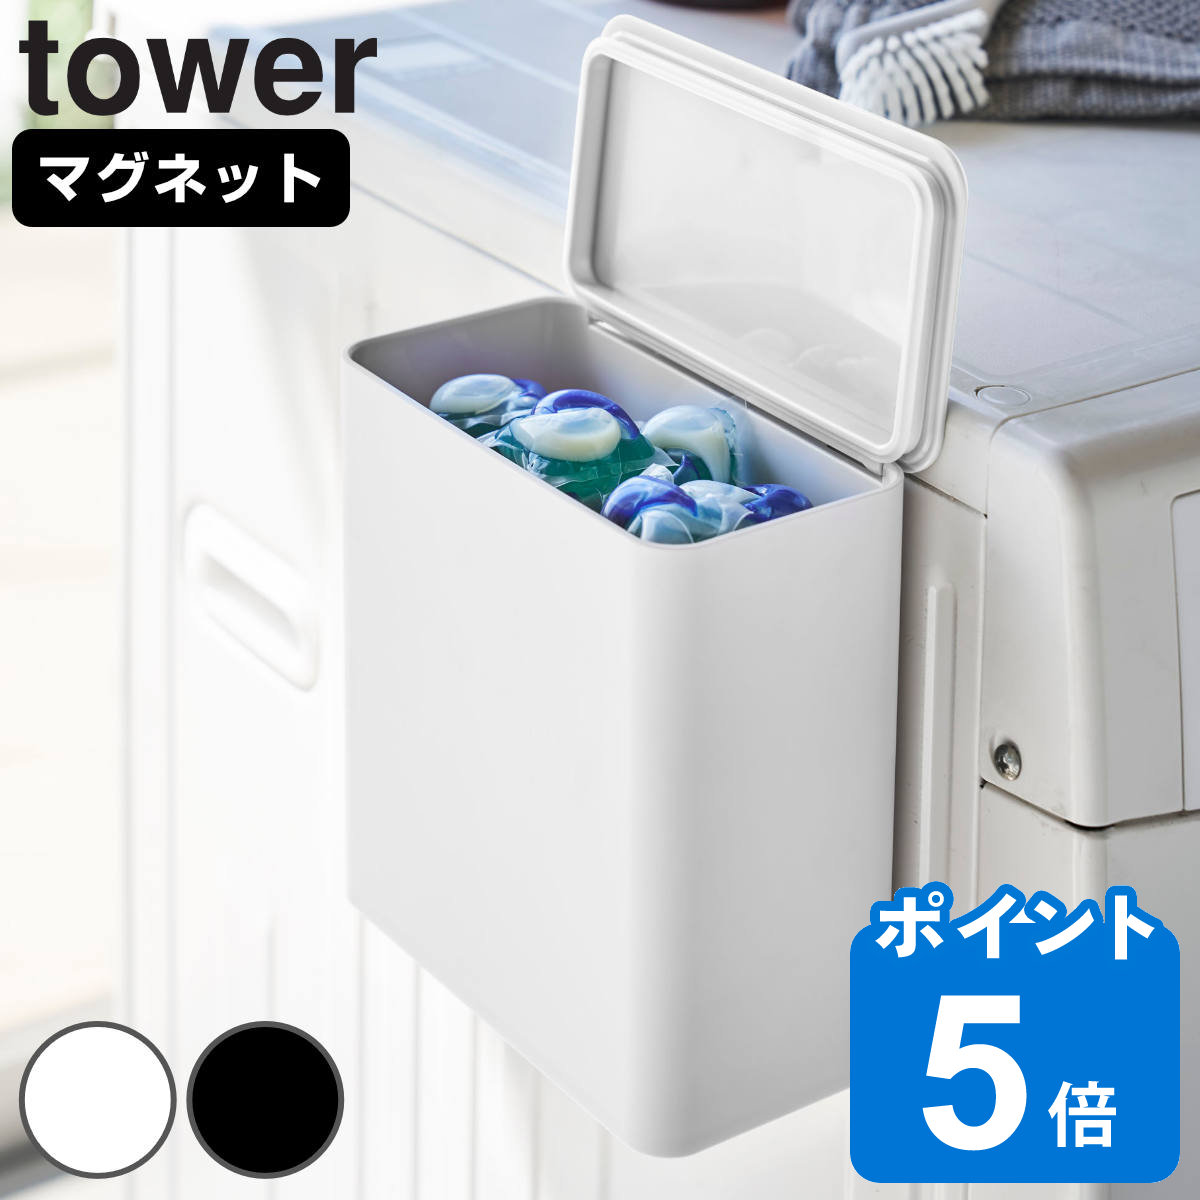 tower マグネット洗濯洗剤ボールストッカー タワー